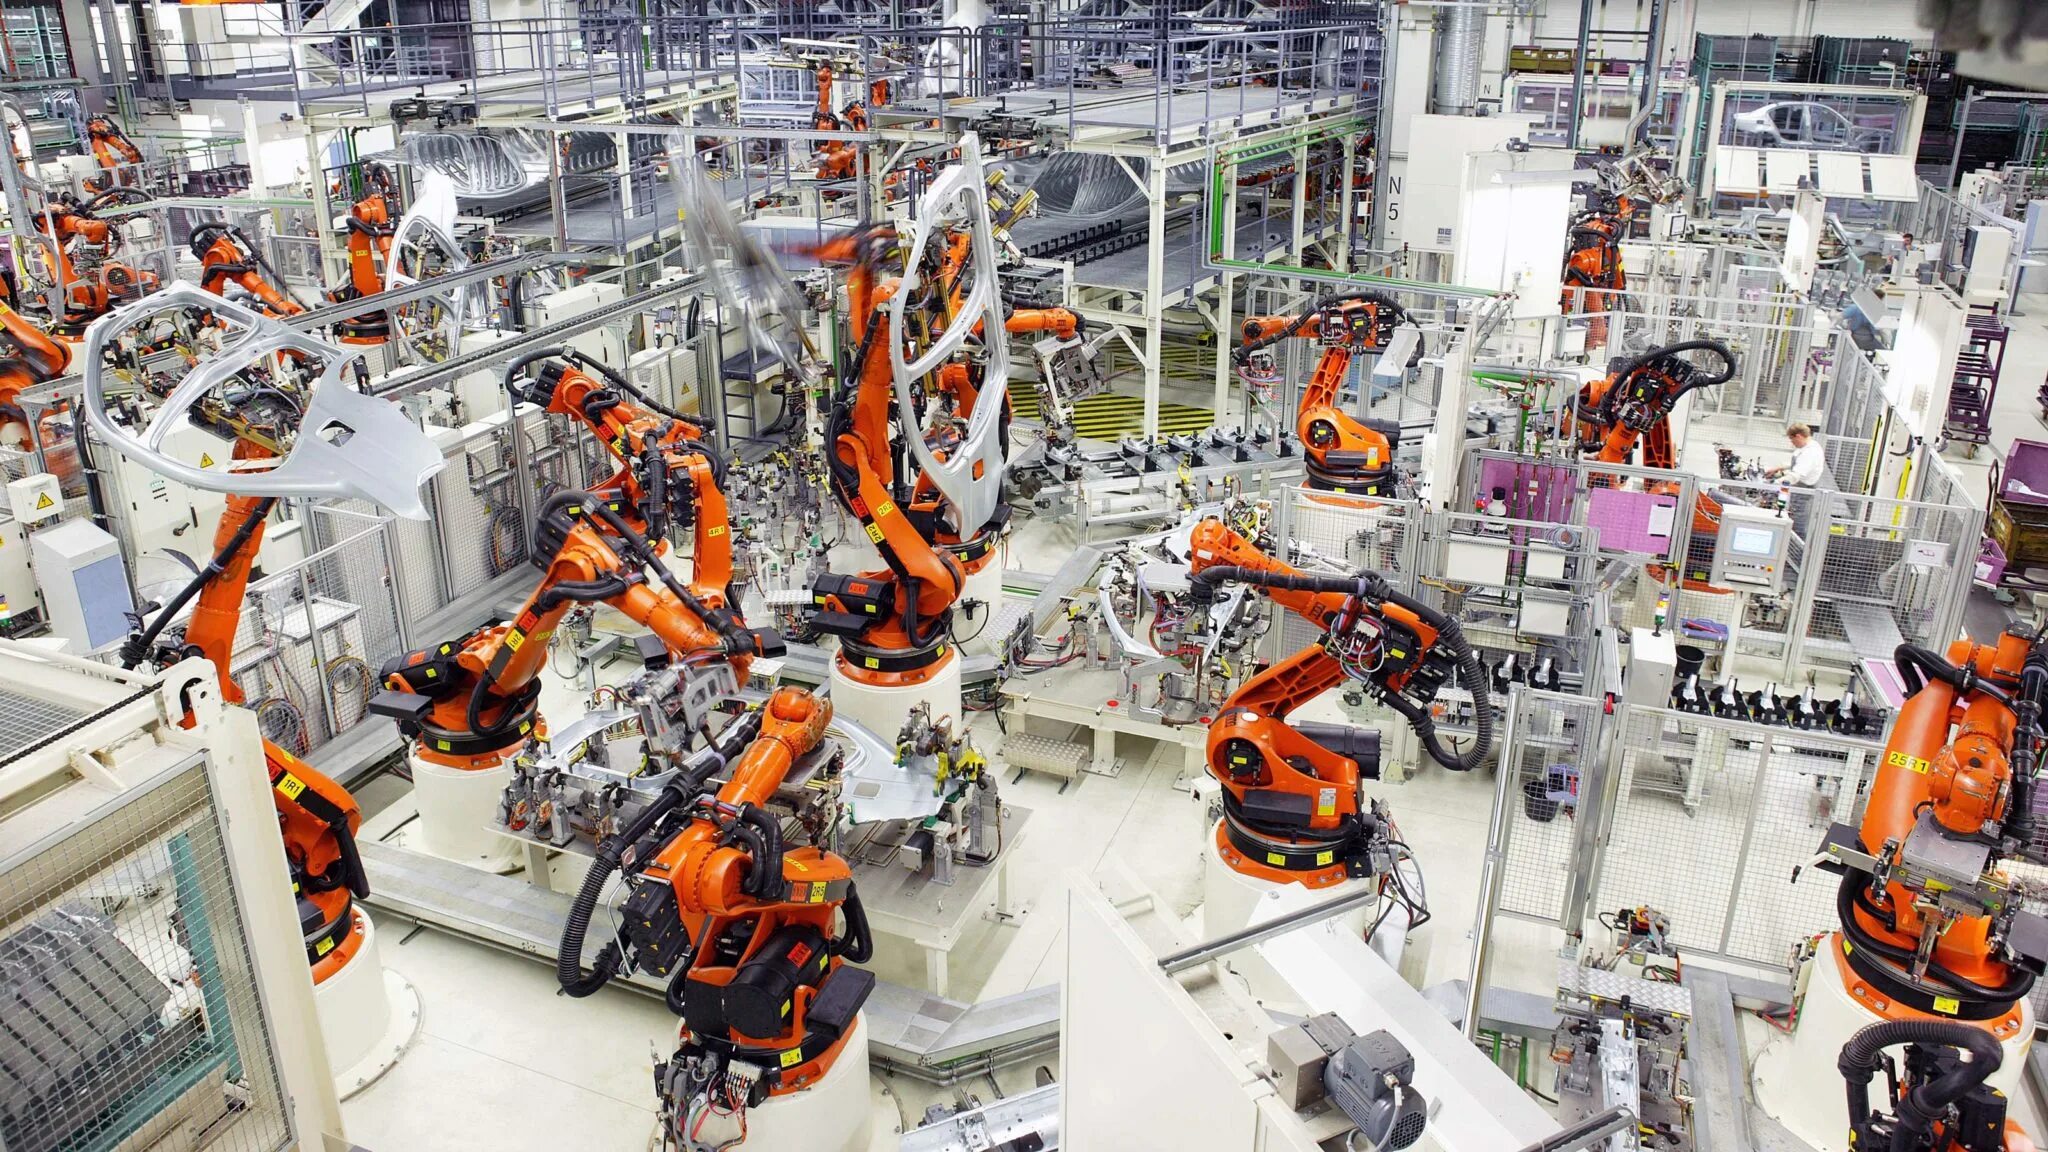 Завод фабрика kuka в Германии. Фирма kuka роботы. Промышленные роботы. Машиностроение. Современная производственная организация